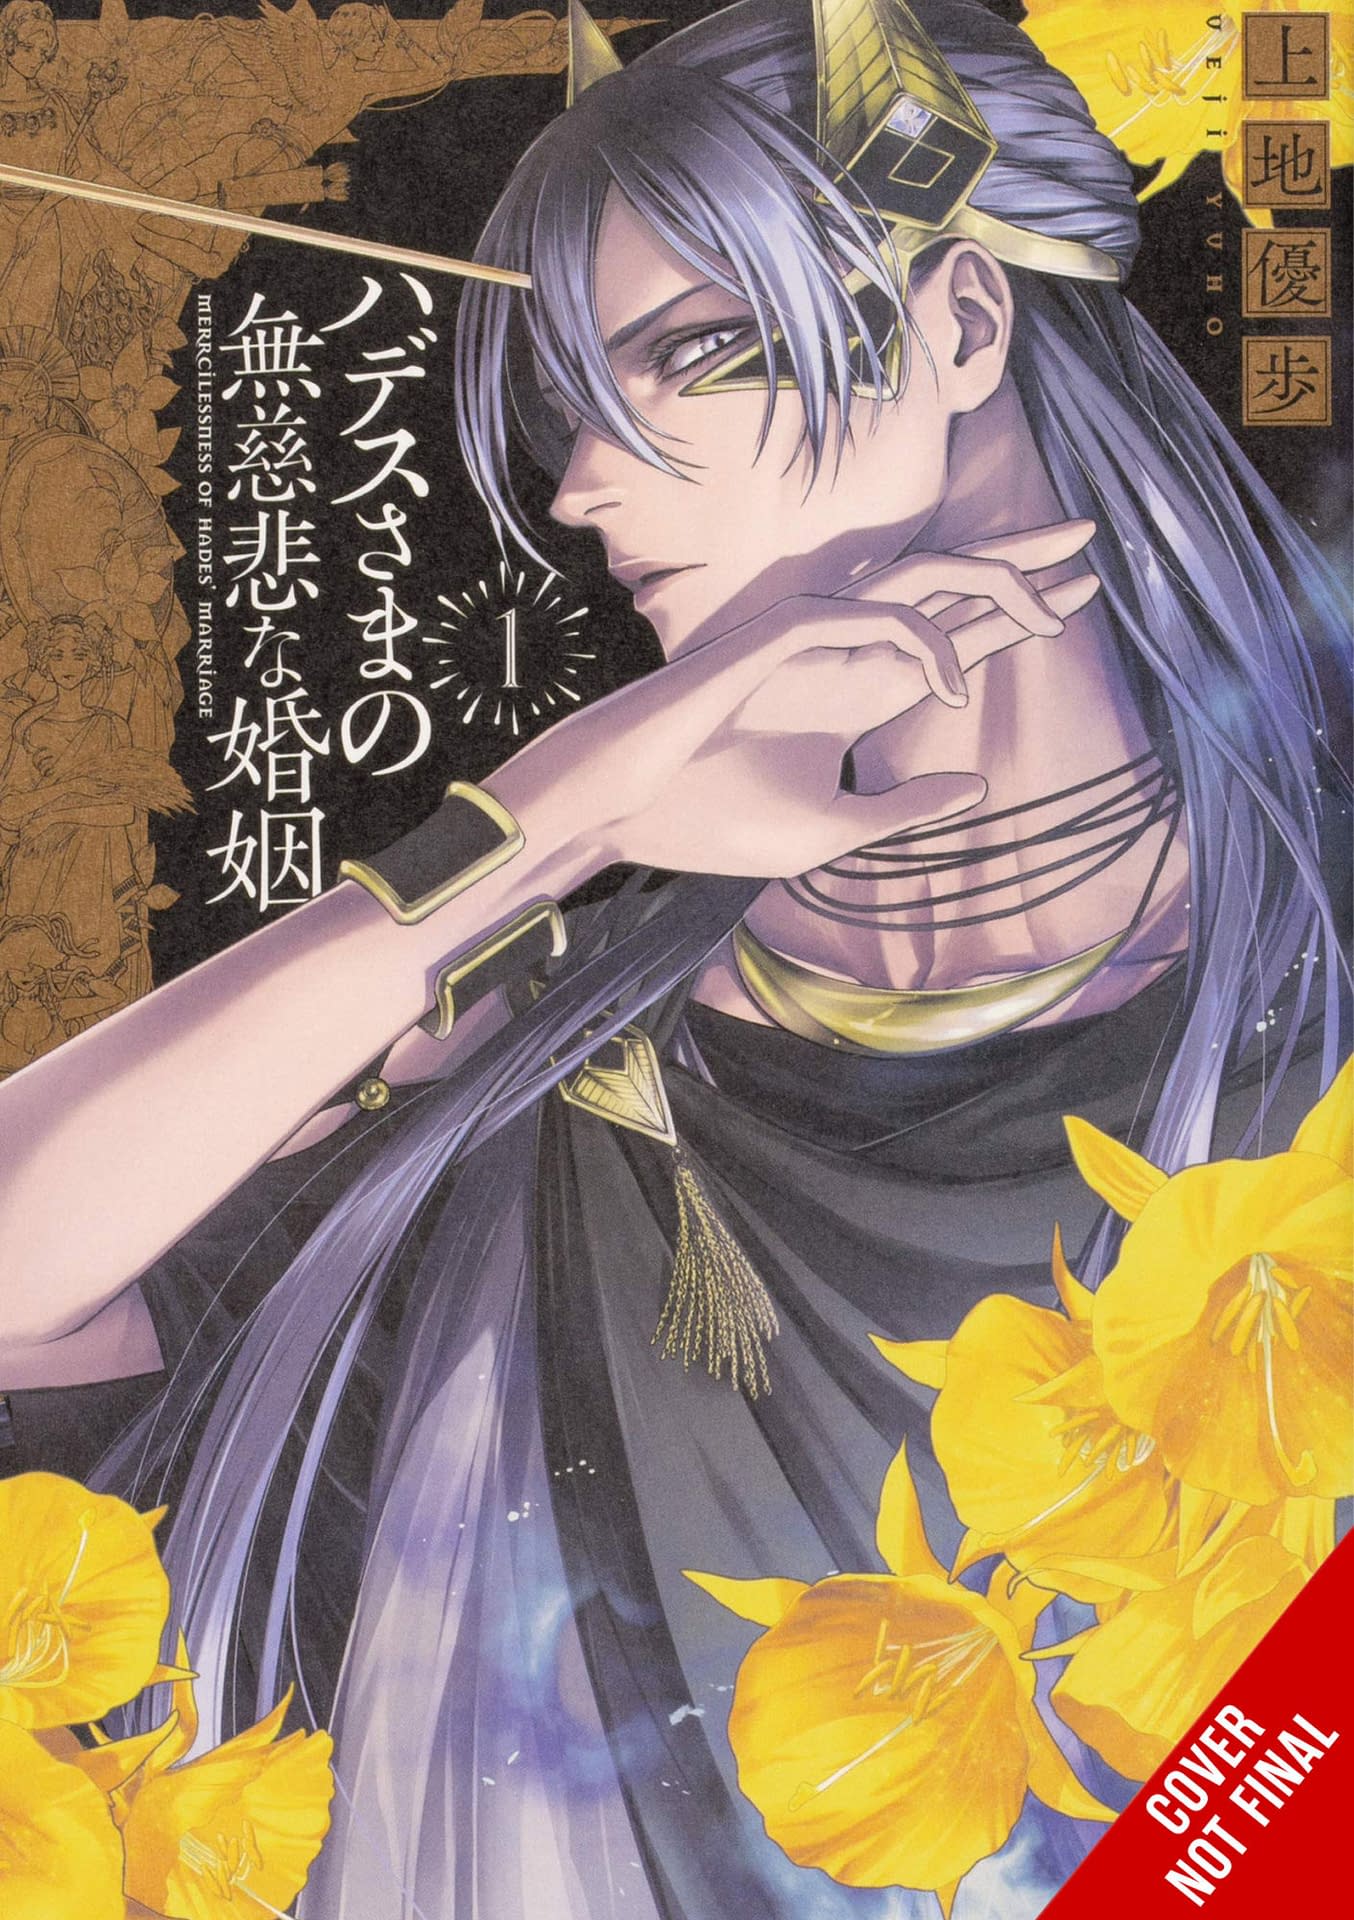 Yen Press Licenses '86—Eighty-Six' Manga for December Release